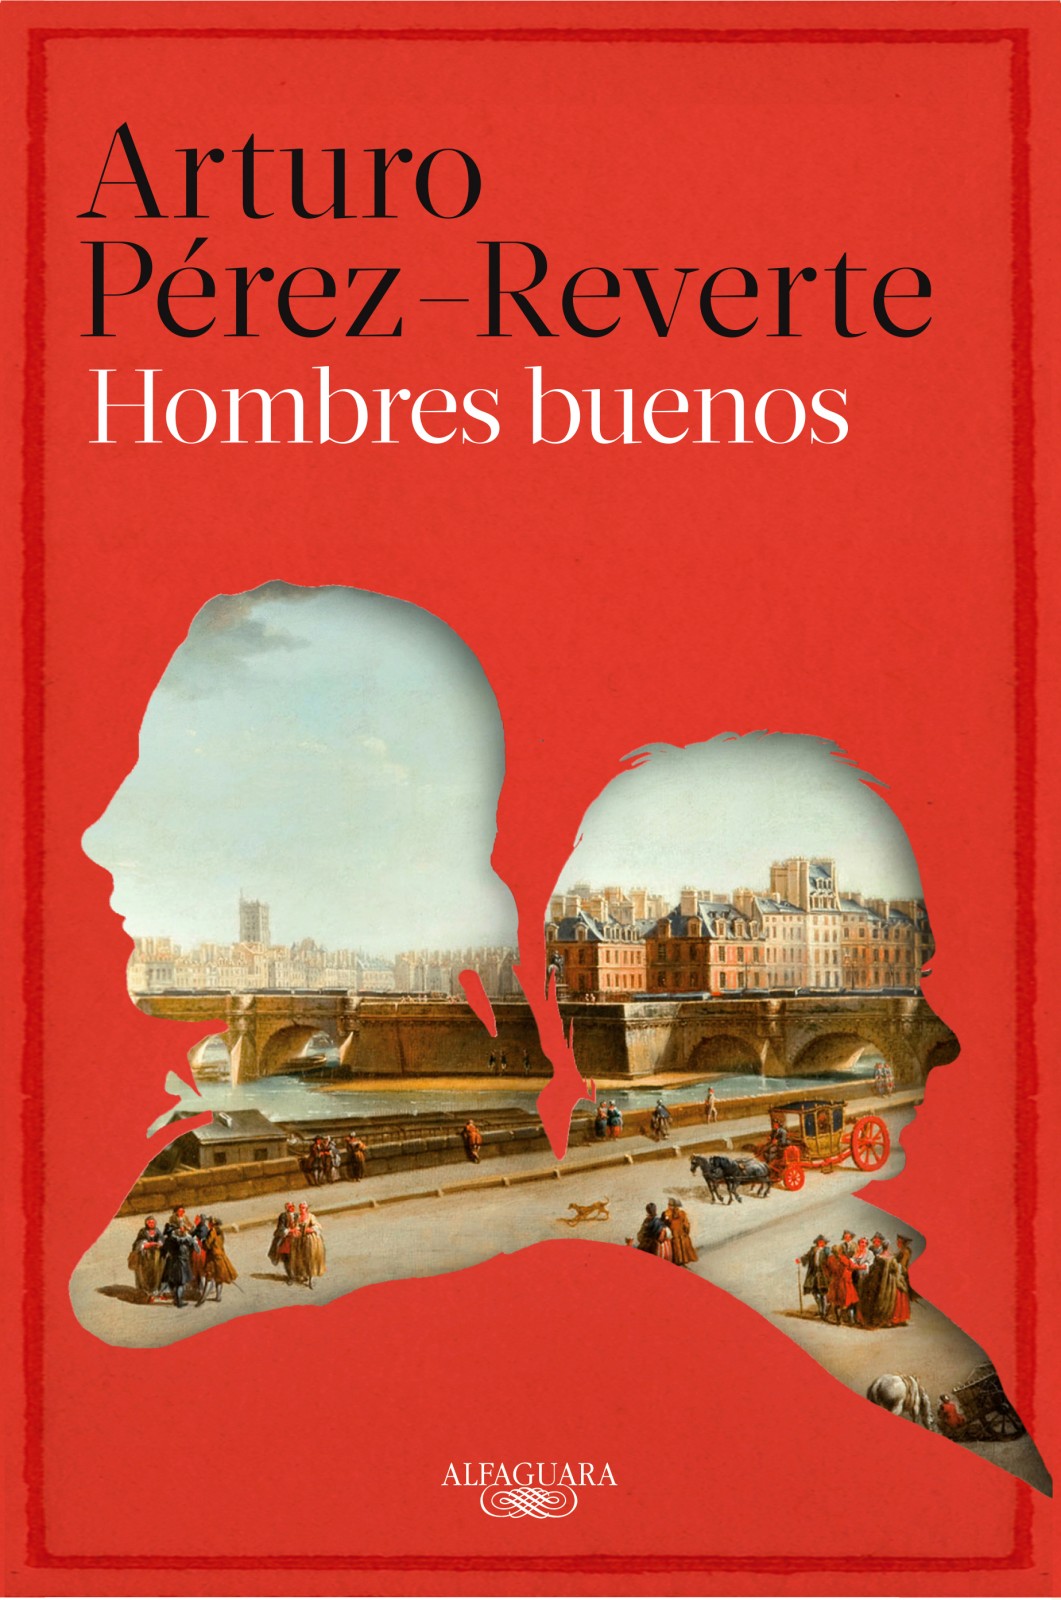 Hombres buenos, de Arturo Pérez-Reverte